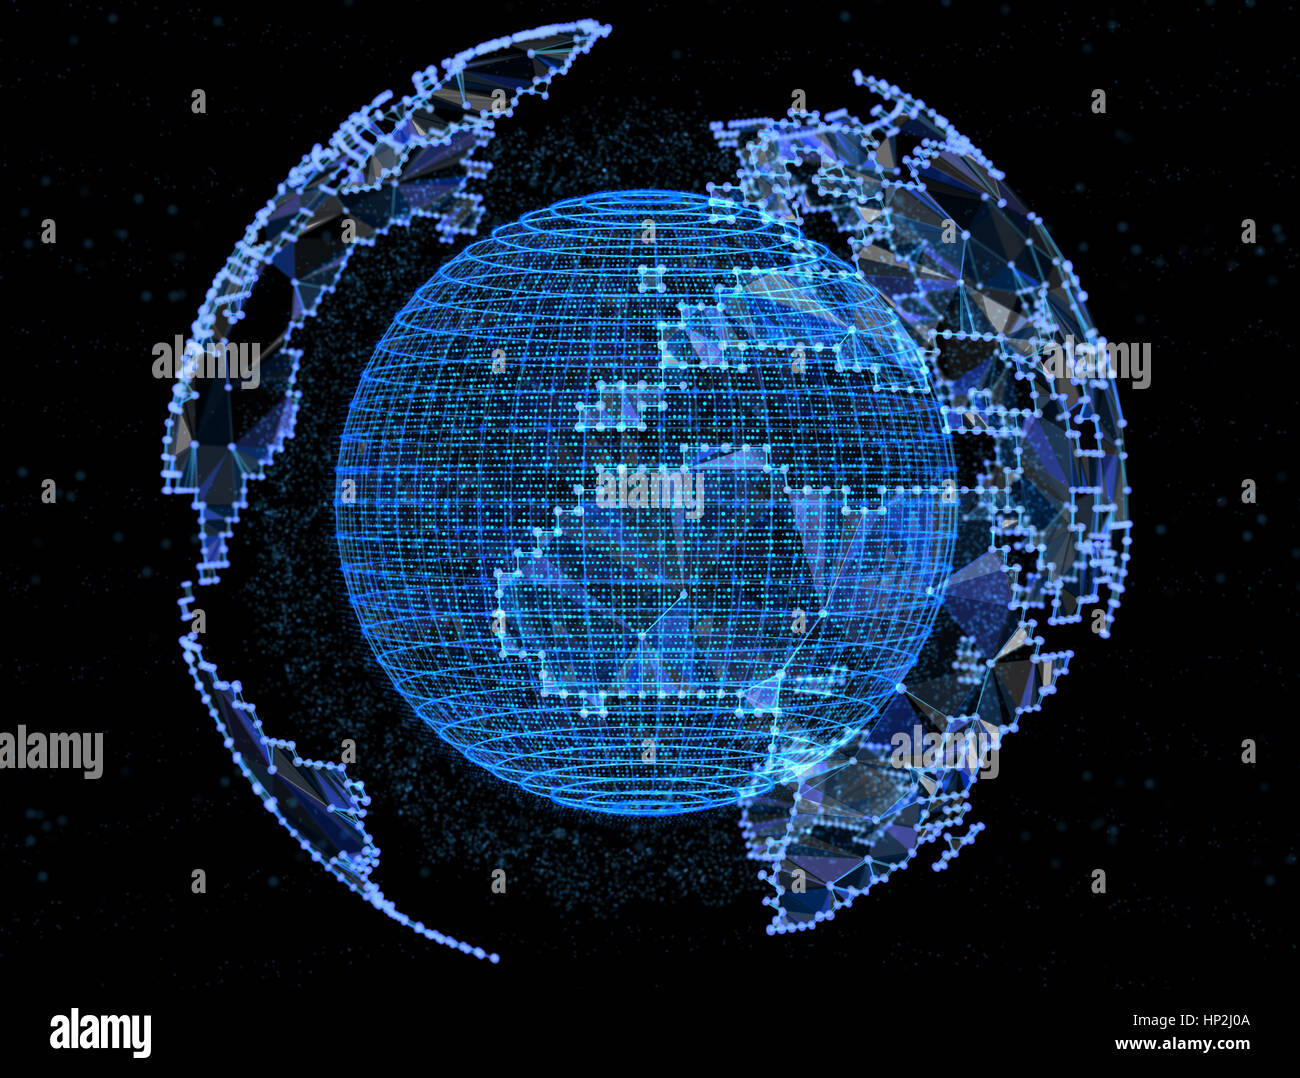 Planeta digital en las redes de telecomunicaciones de internet Foto de stock